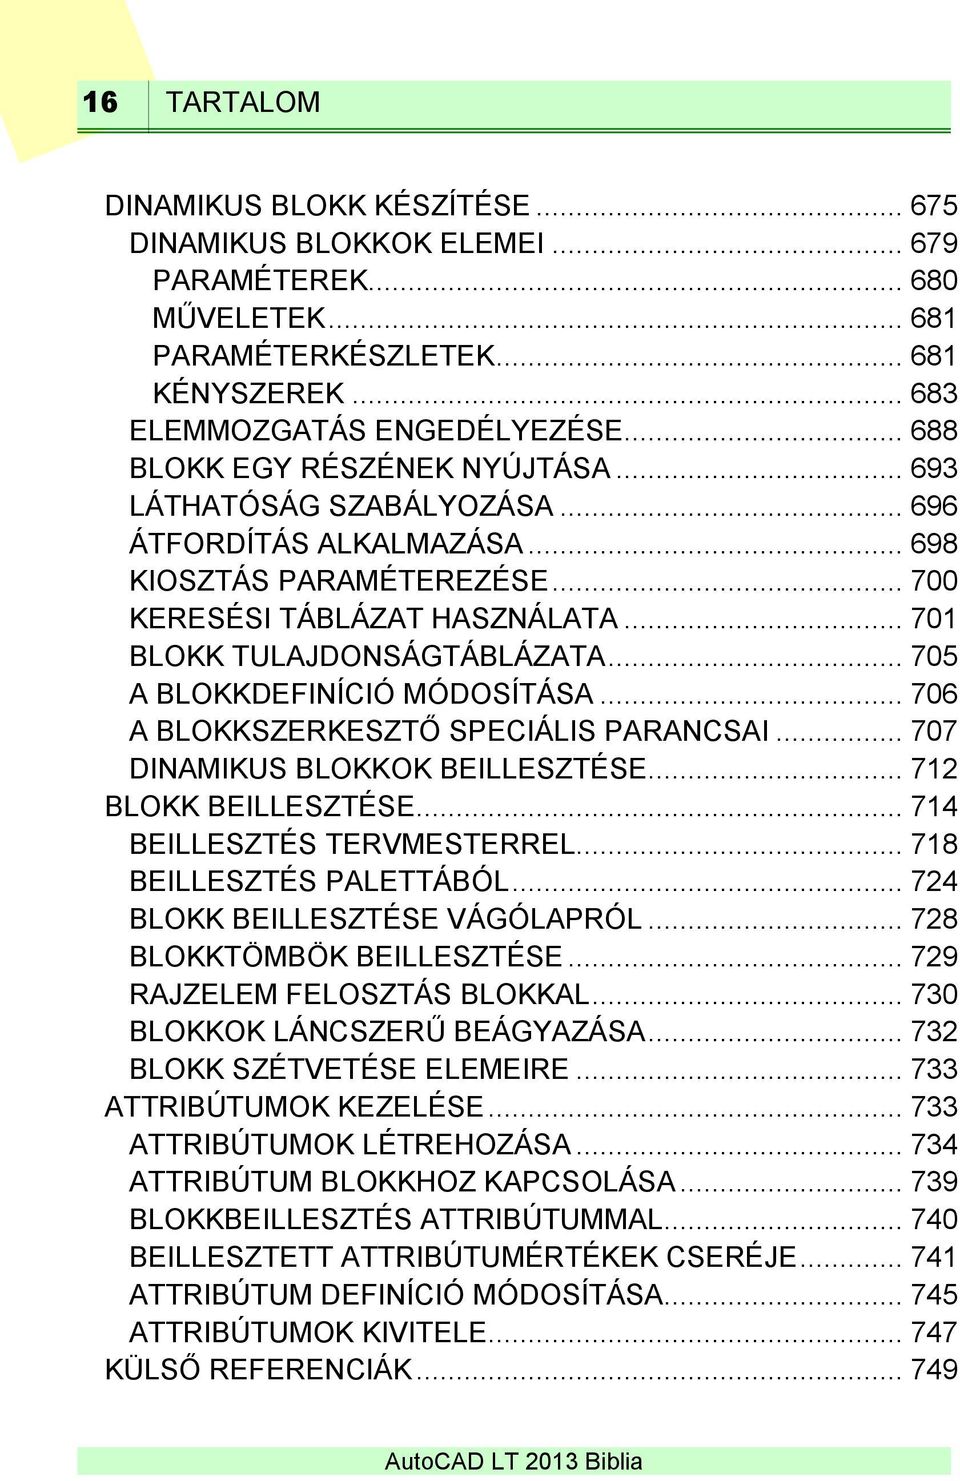 AutoCAD LT 2013 Biblia - PDF Ingyenes letöltés